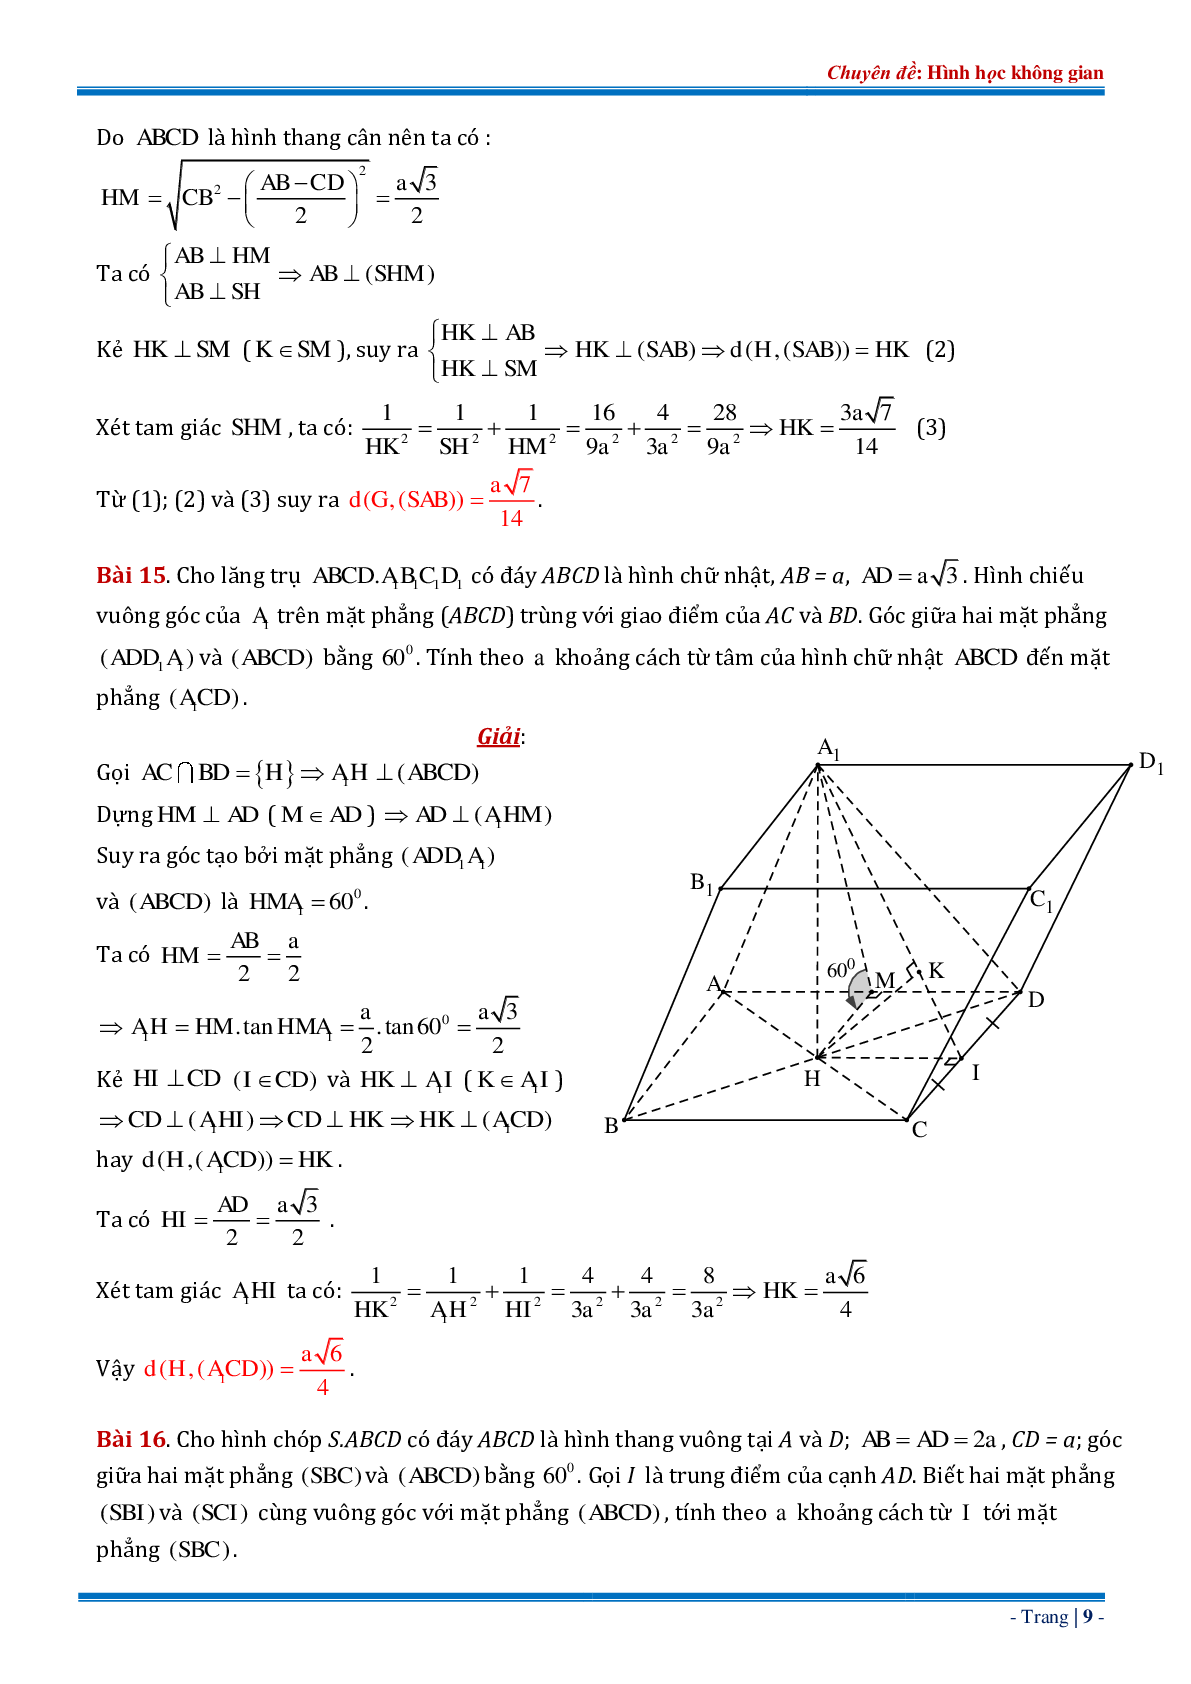 18 bài tập về khoảng cách từ điểm đến mặt phẳng dạng tổng hợp có đáp án chi tiết (trang 9)